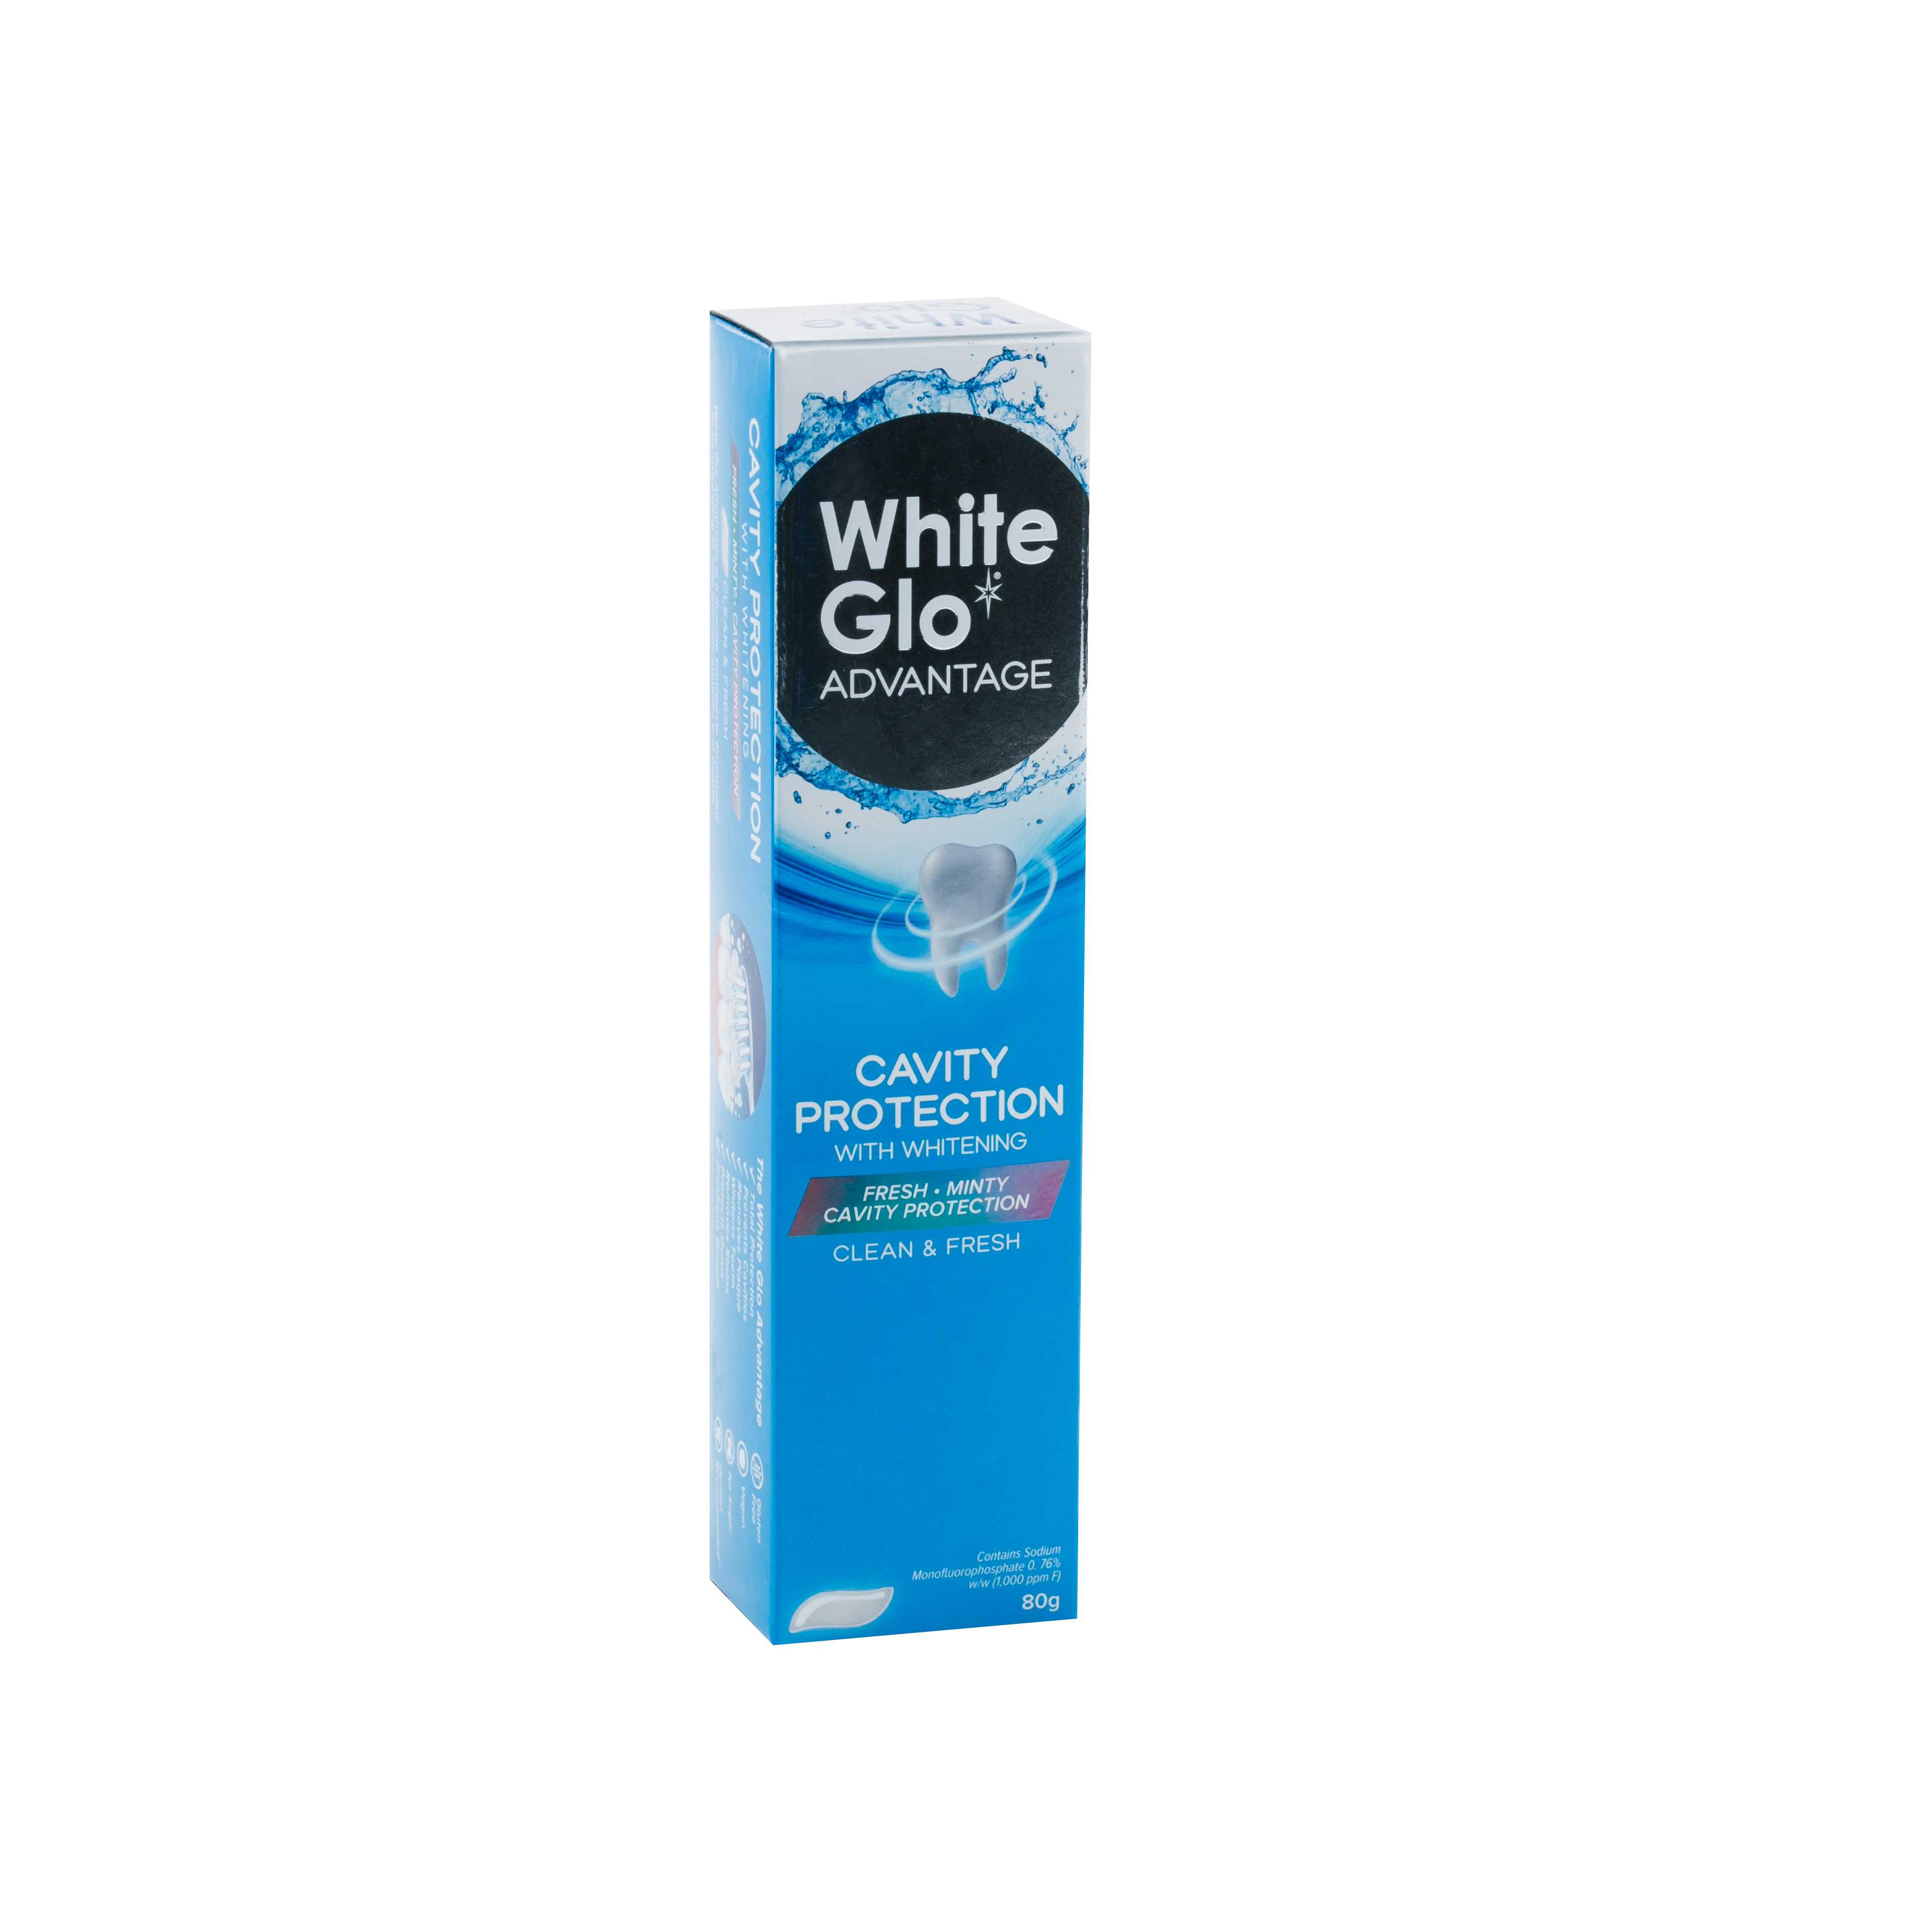 Зубная паста White Glo отбеливающая Защита от кариеса 80 global white extra whitening отбеливающая зубная паста 100 г